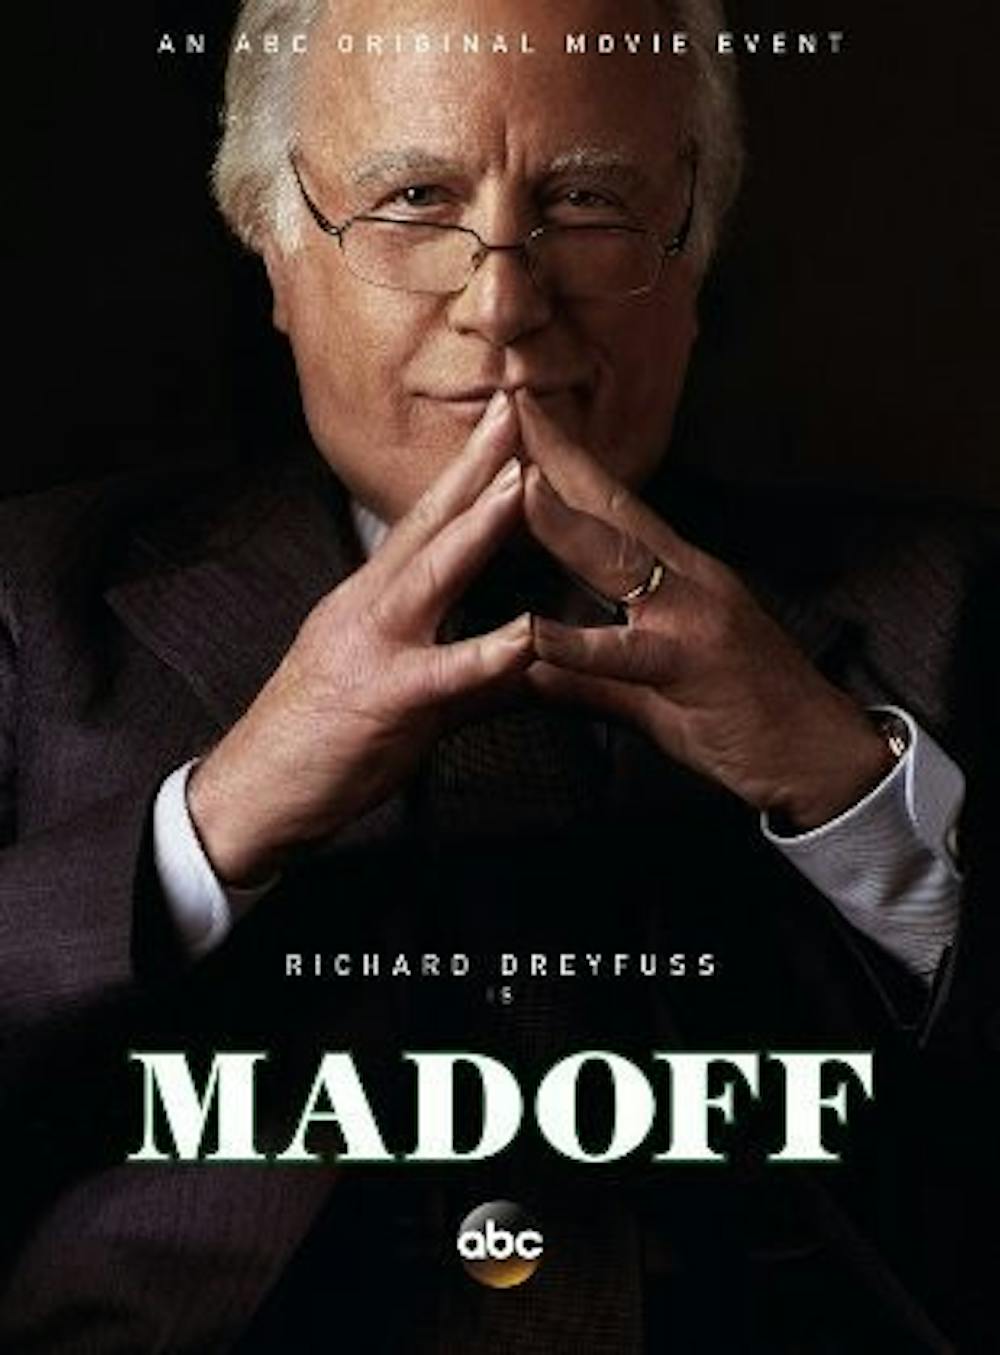 Richard Dreyfuss plays Bernie Madoff in ABC's new mini-series.